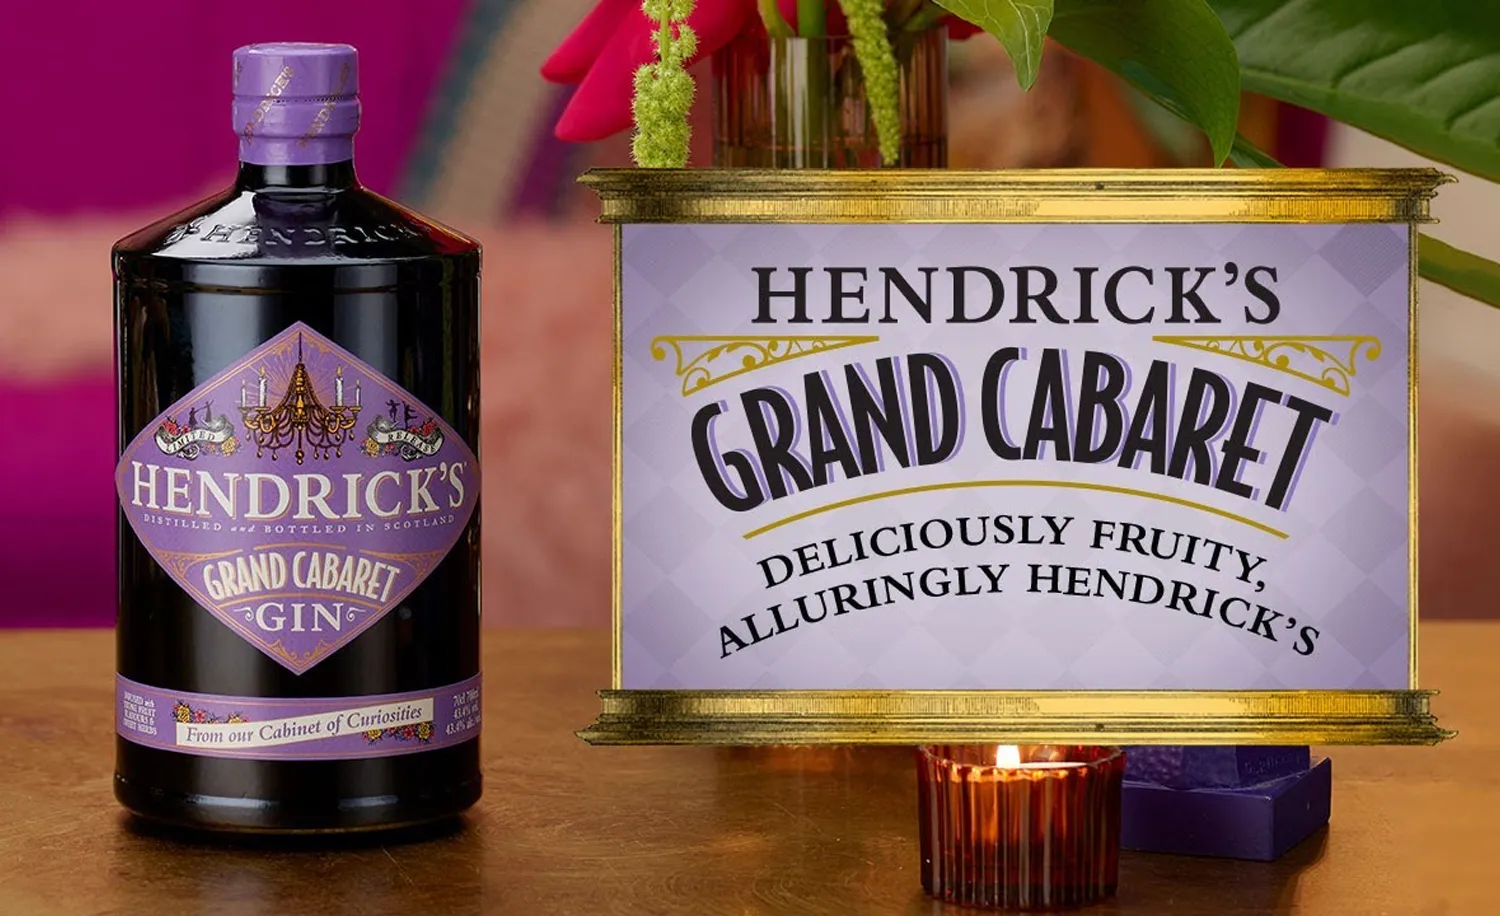 Hendrick’s launches Grand Cabaret gin